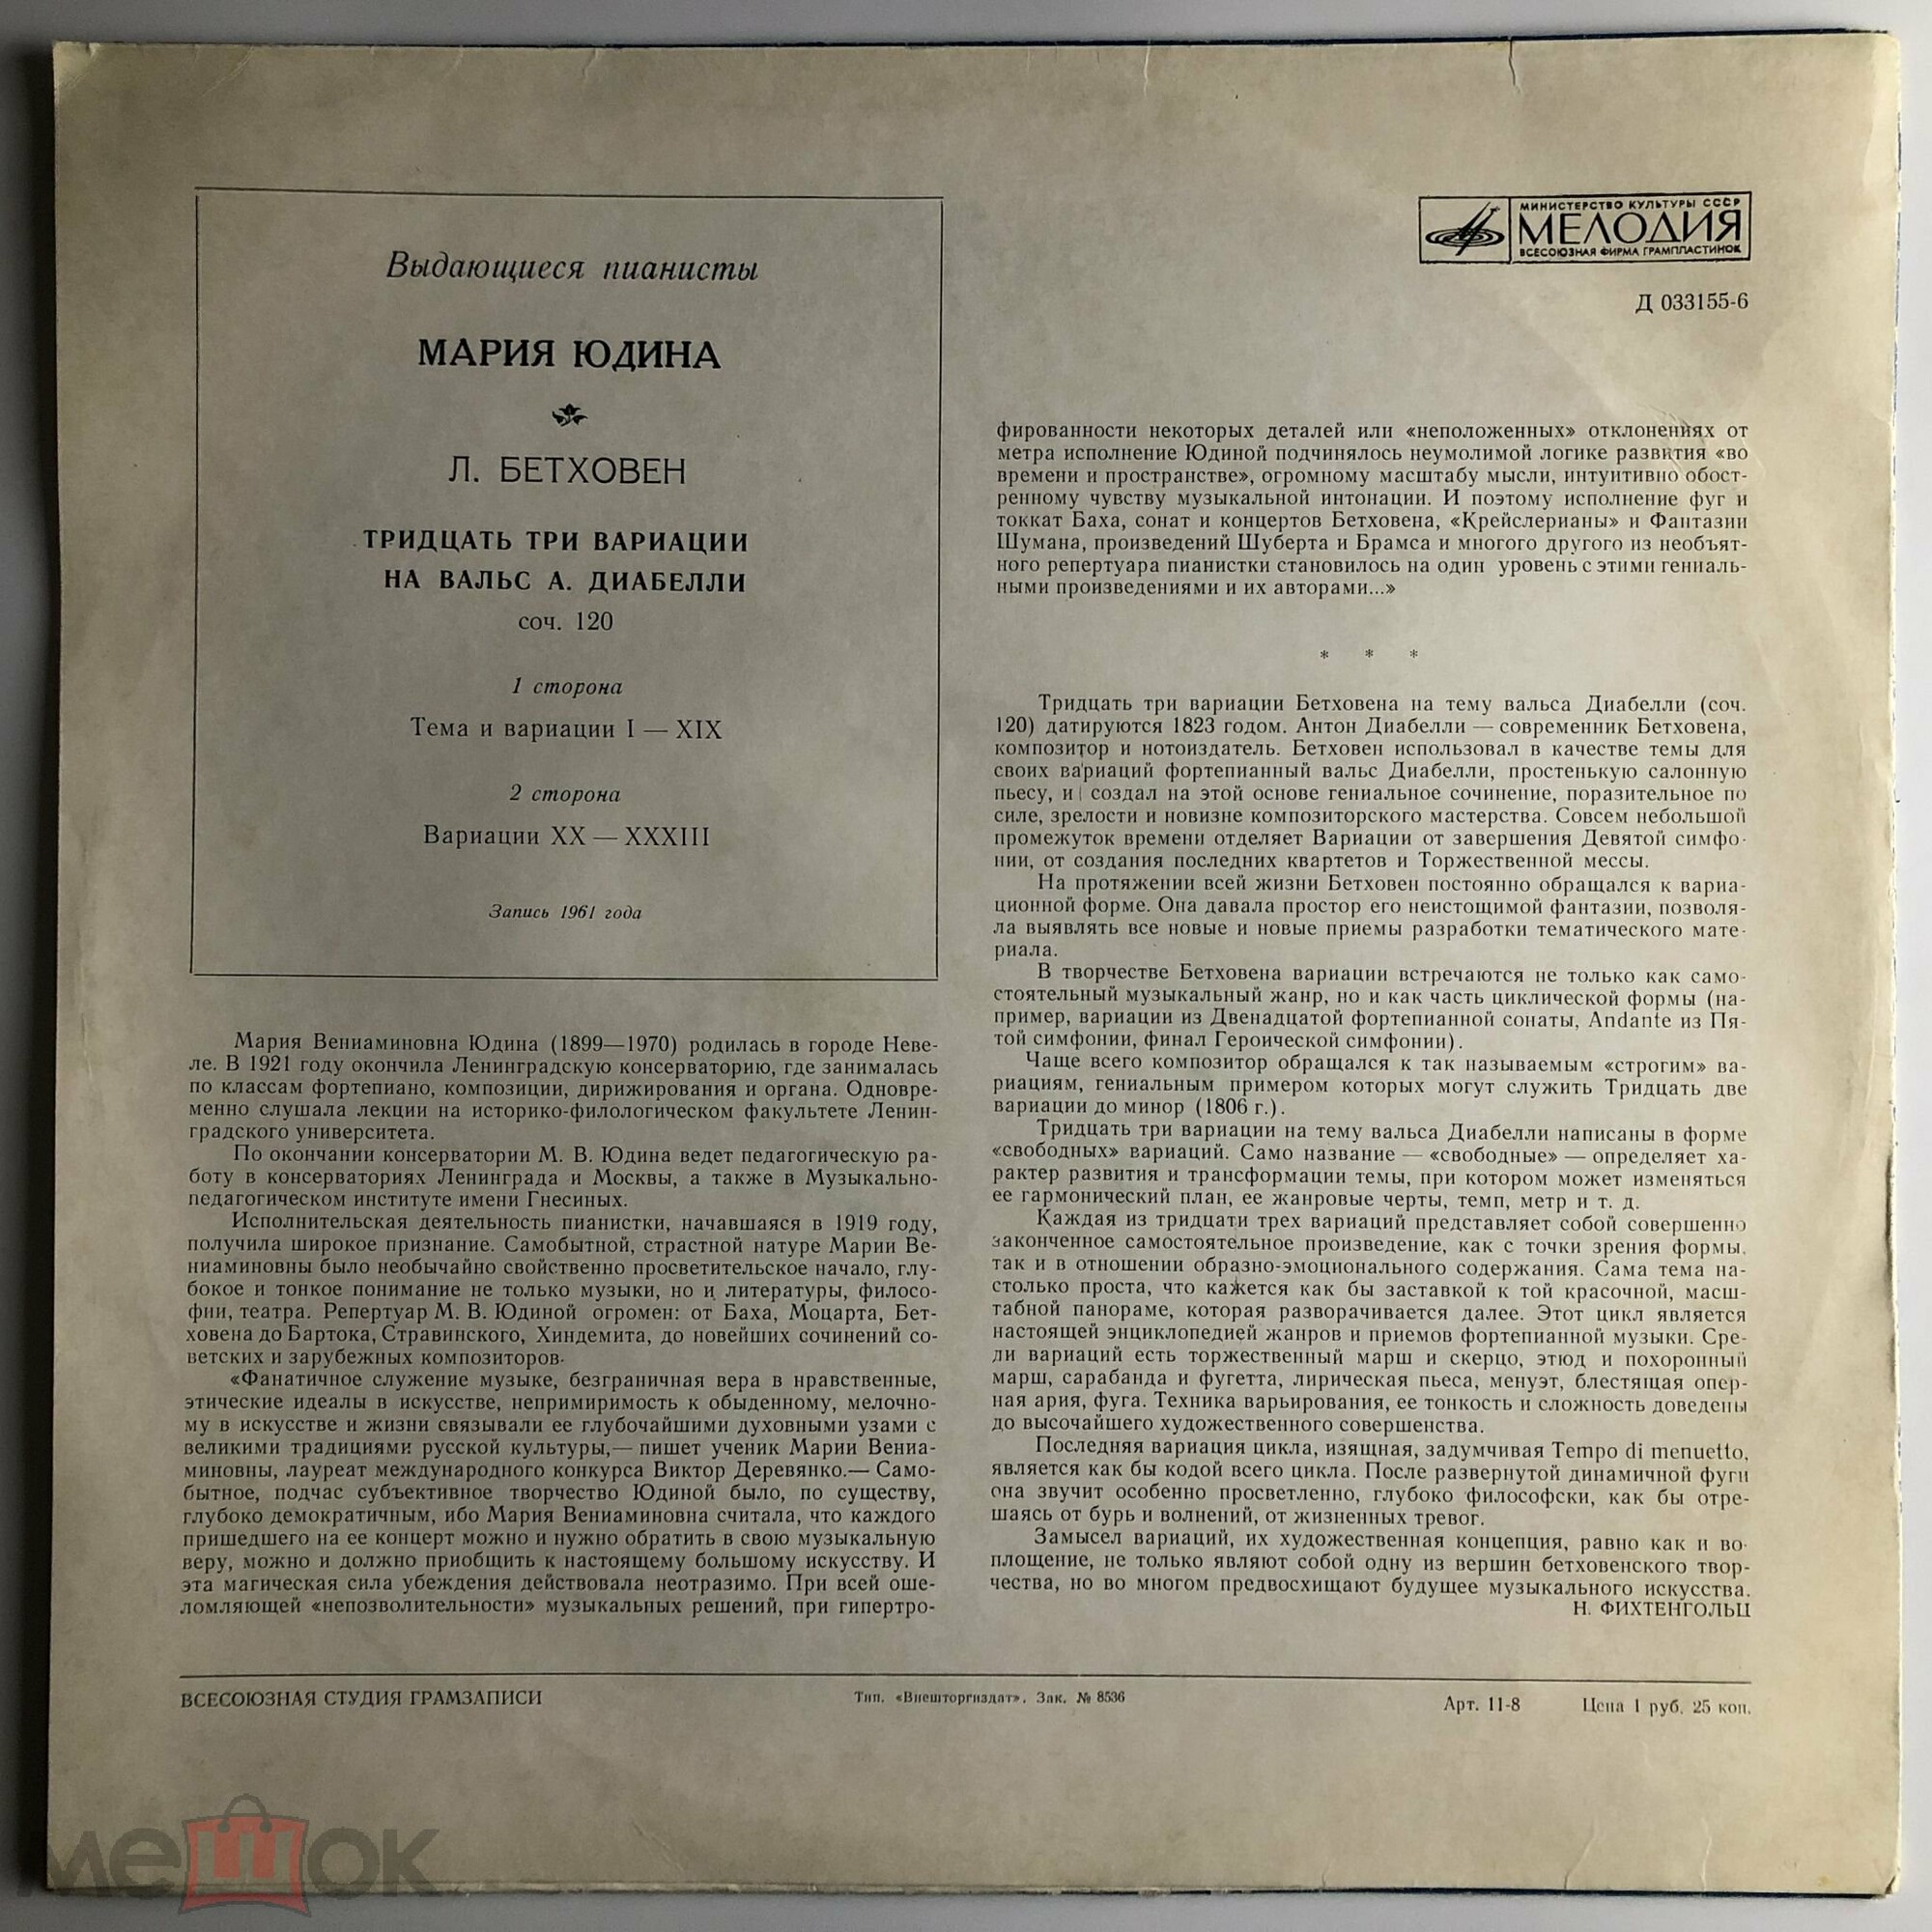 Л. Бетховен: 33 вариации на вальс А. Диабелли (Мария Юдина, ф-но)